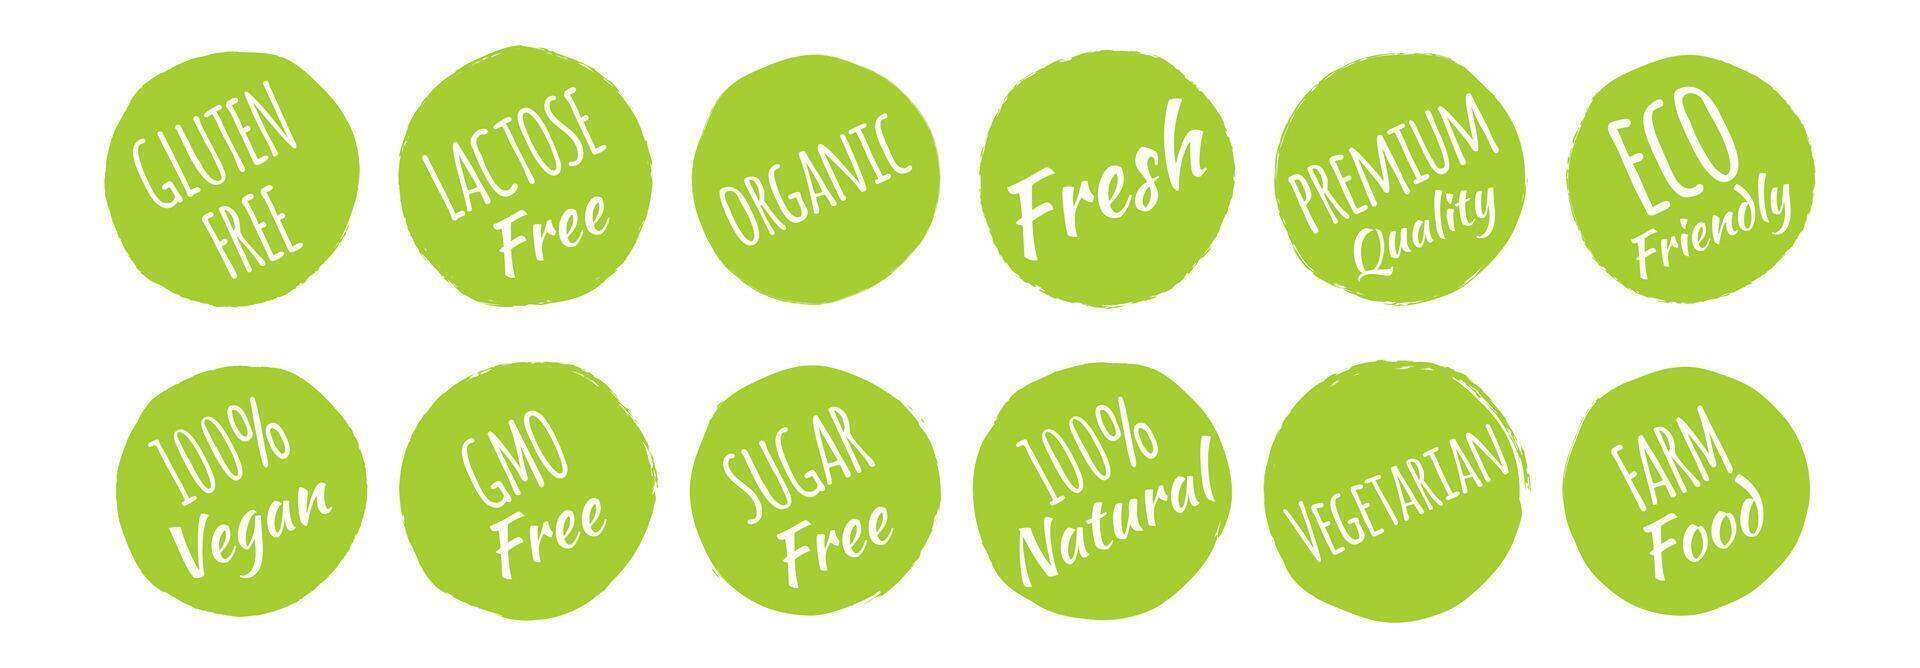 gluten, laktos, gmo, socker fri, eco vänlig, 100 vegan, naturlig, vegetarian, bruka mat ikoner märka uppsättning vektor